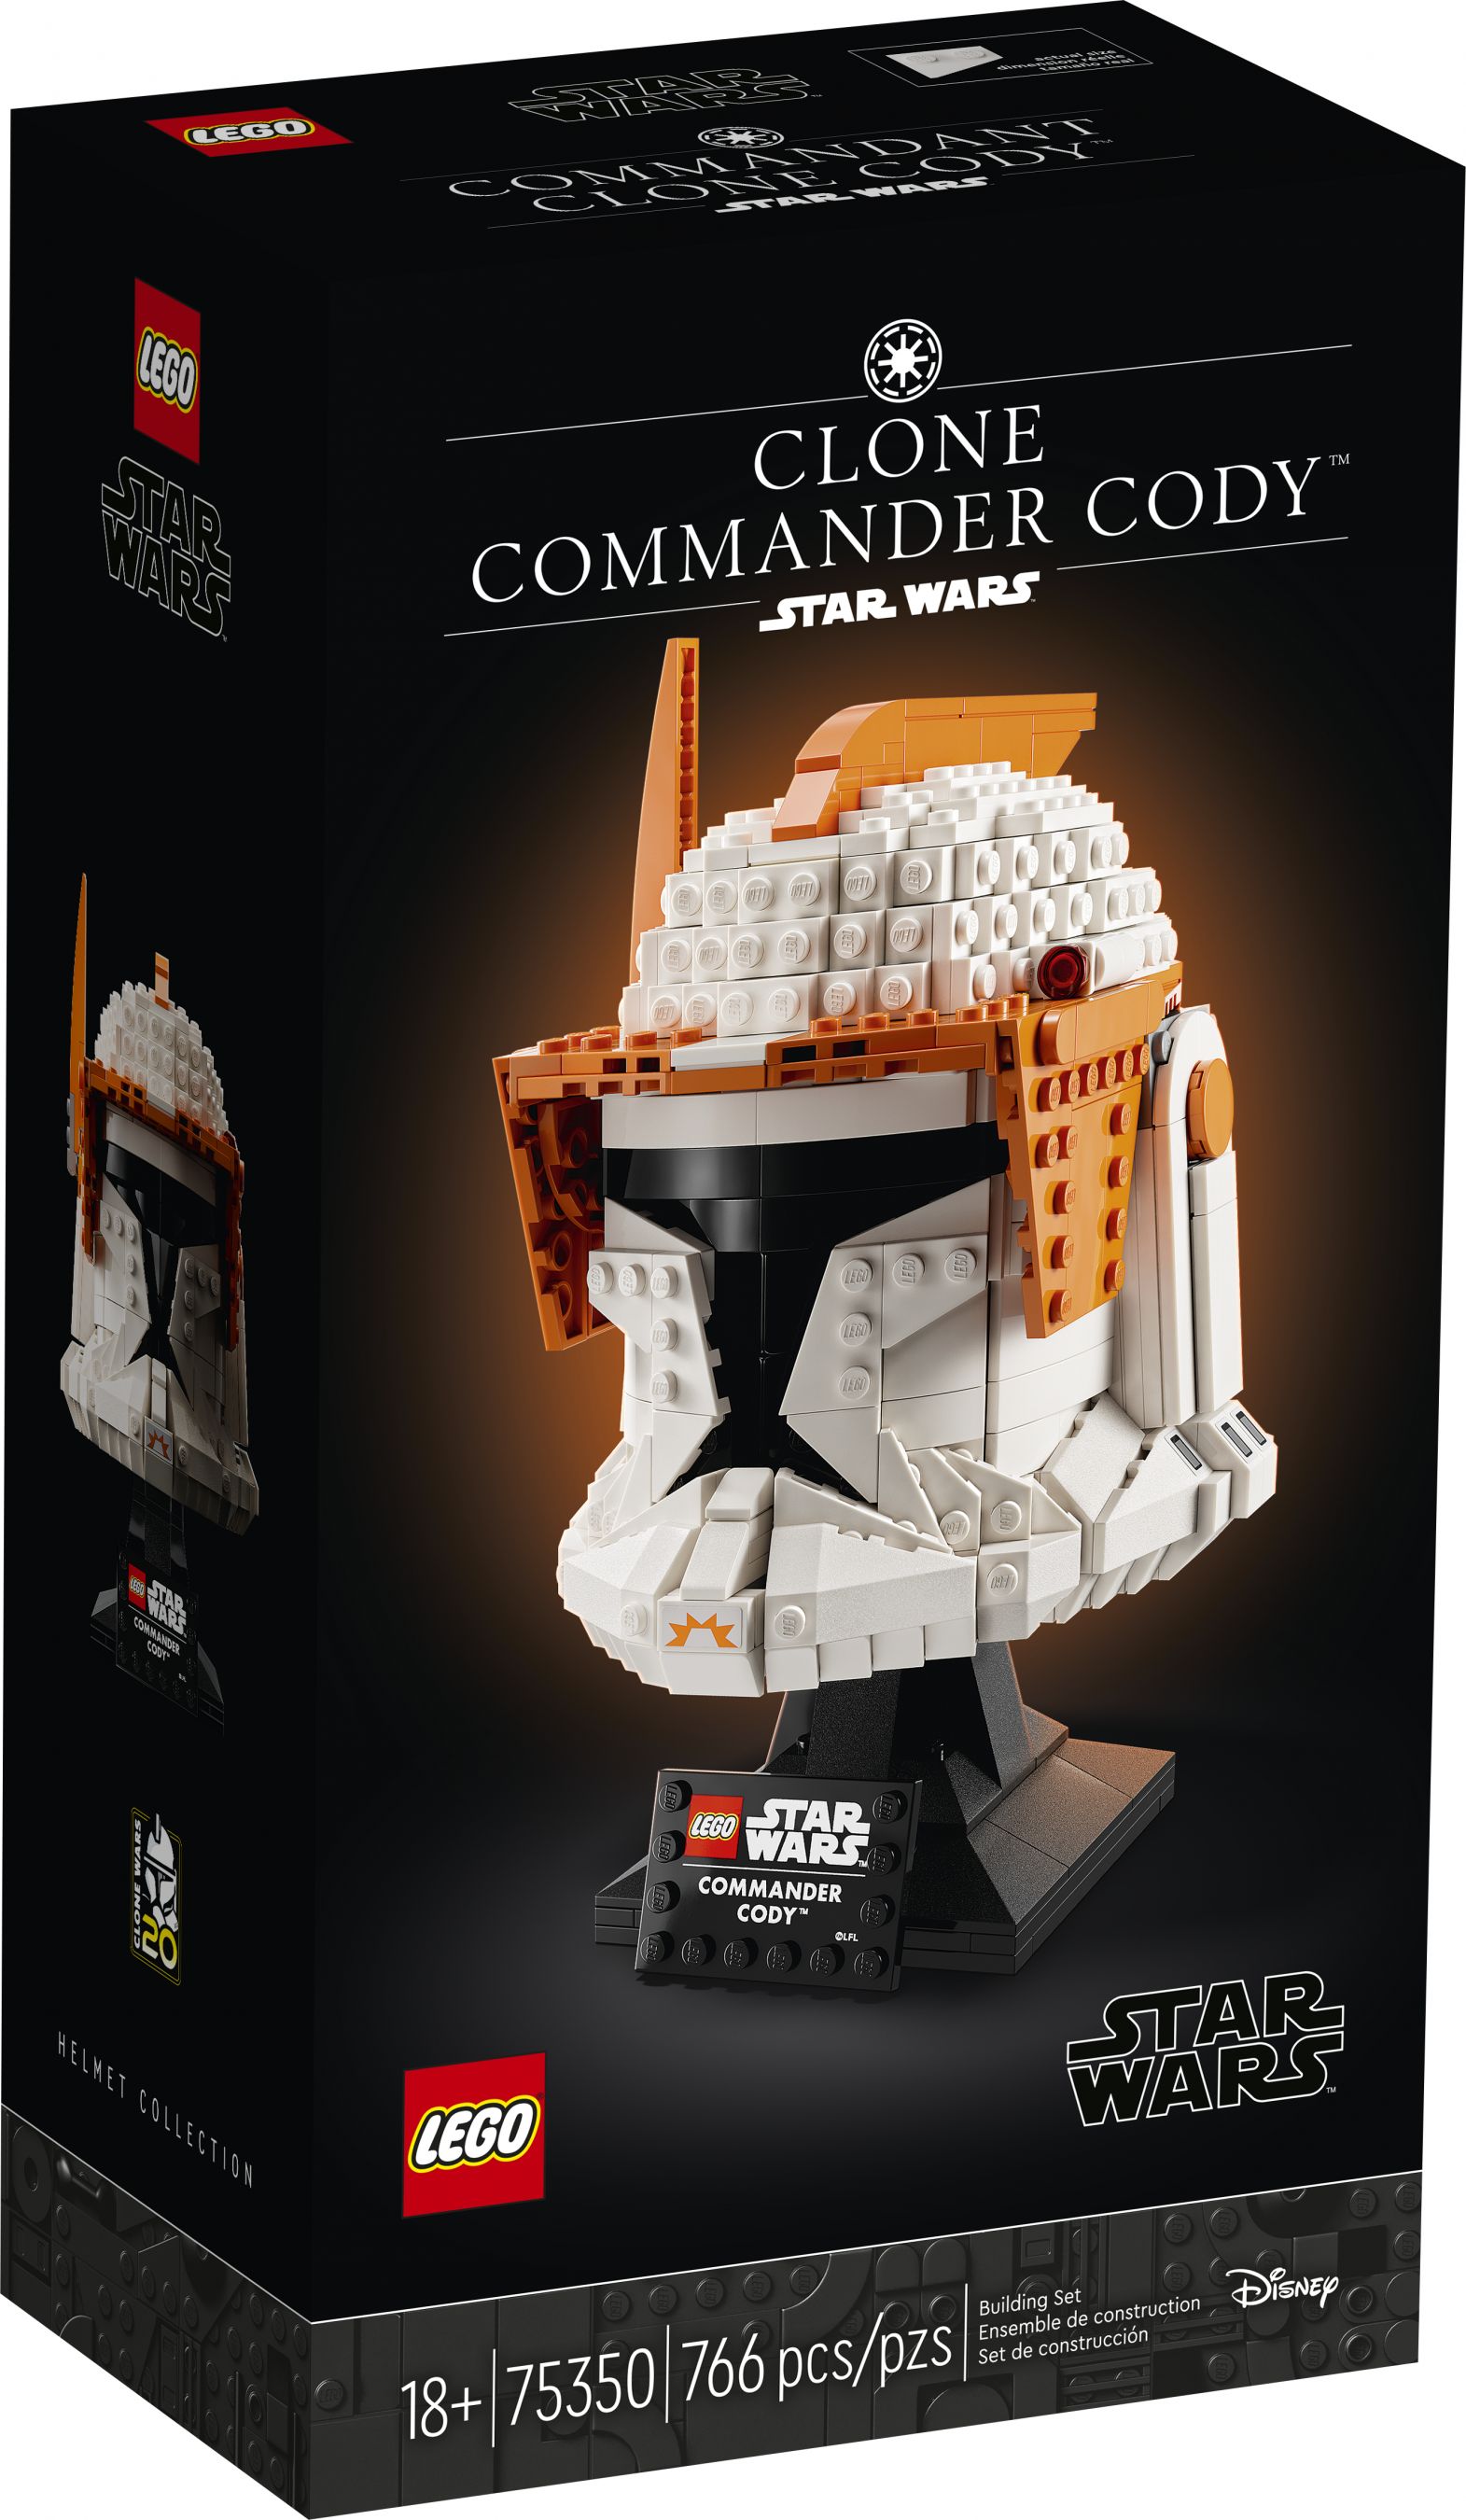 LEGO Star Wars 75350 Clone Commander Cody™ Helm LEGO_75350_alt1.jpg